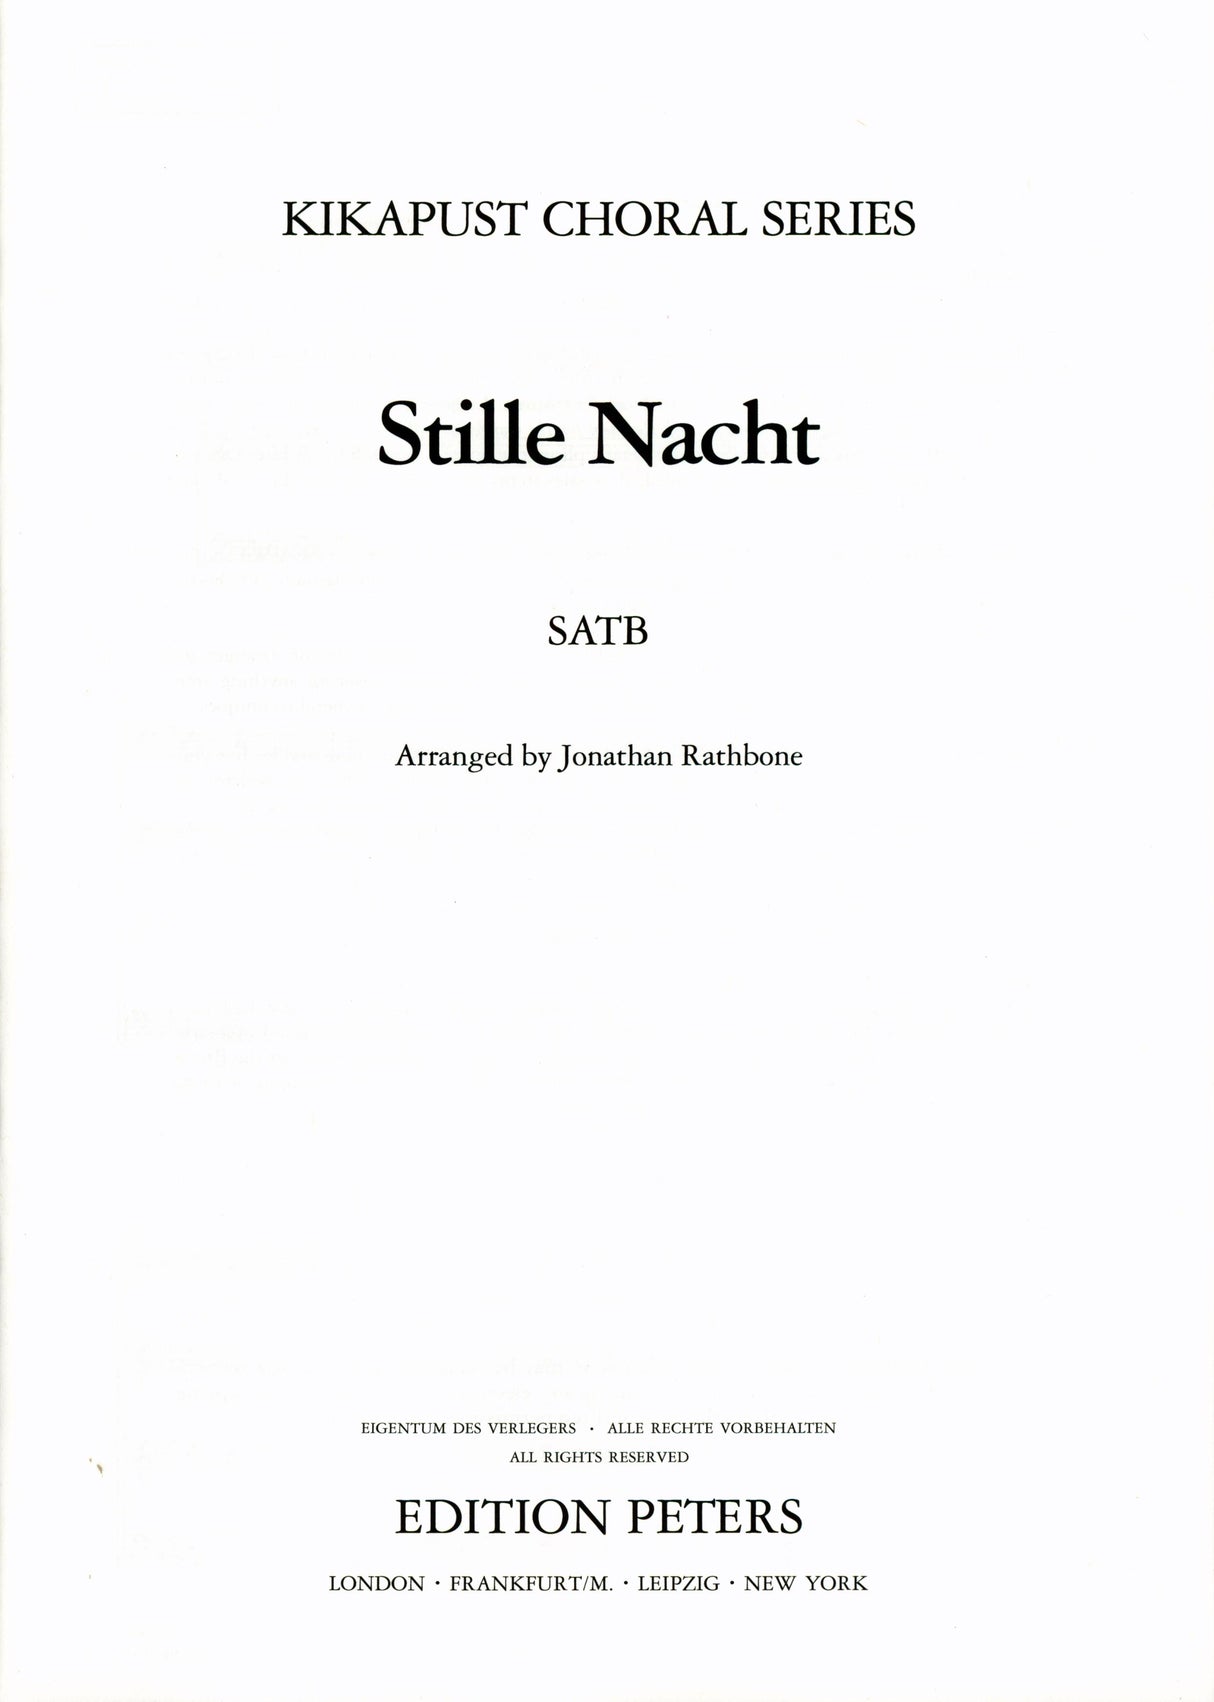 Gruber: Stille Nacht (arr. for SATB Choir)